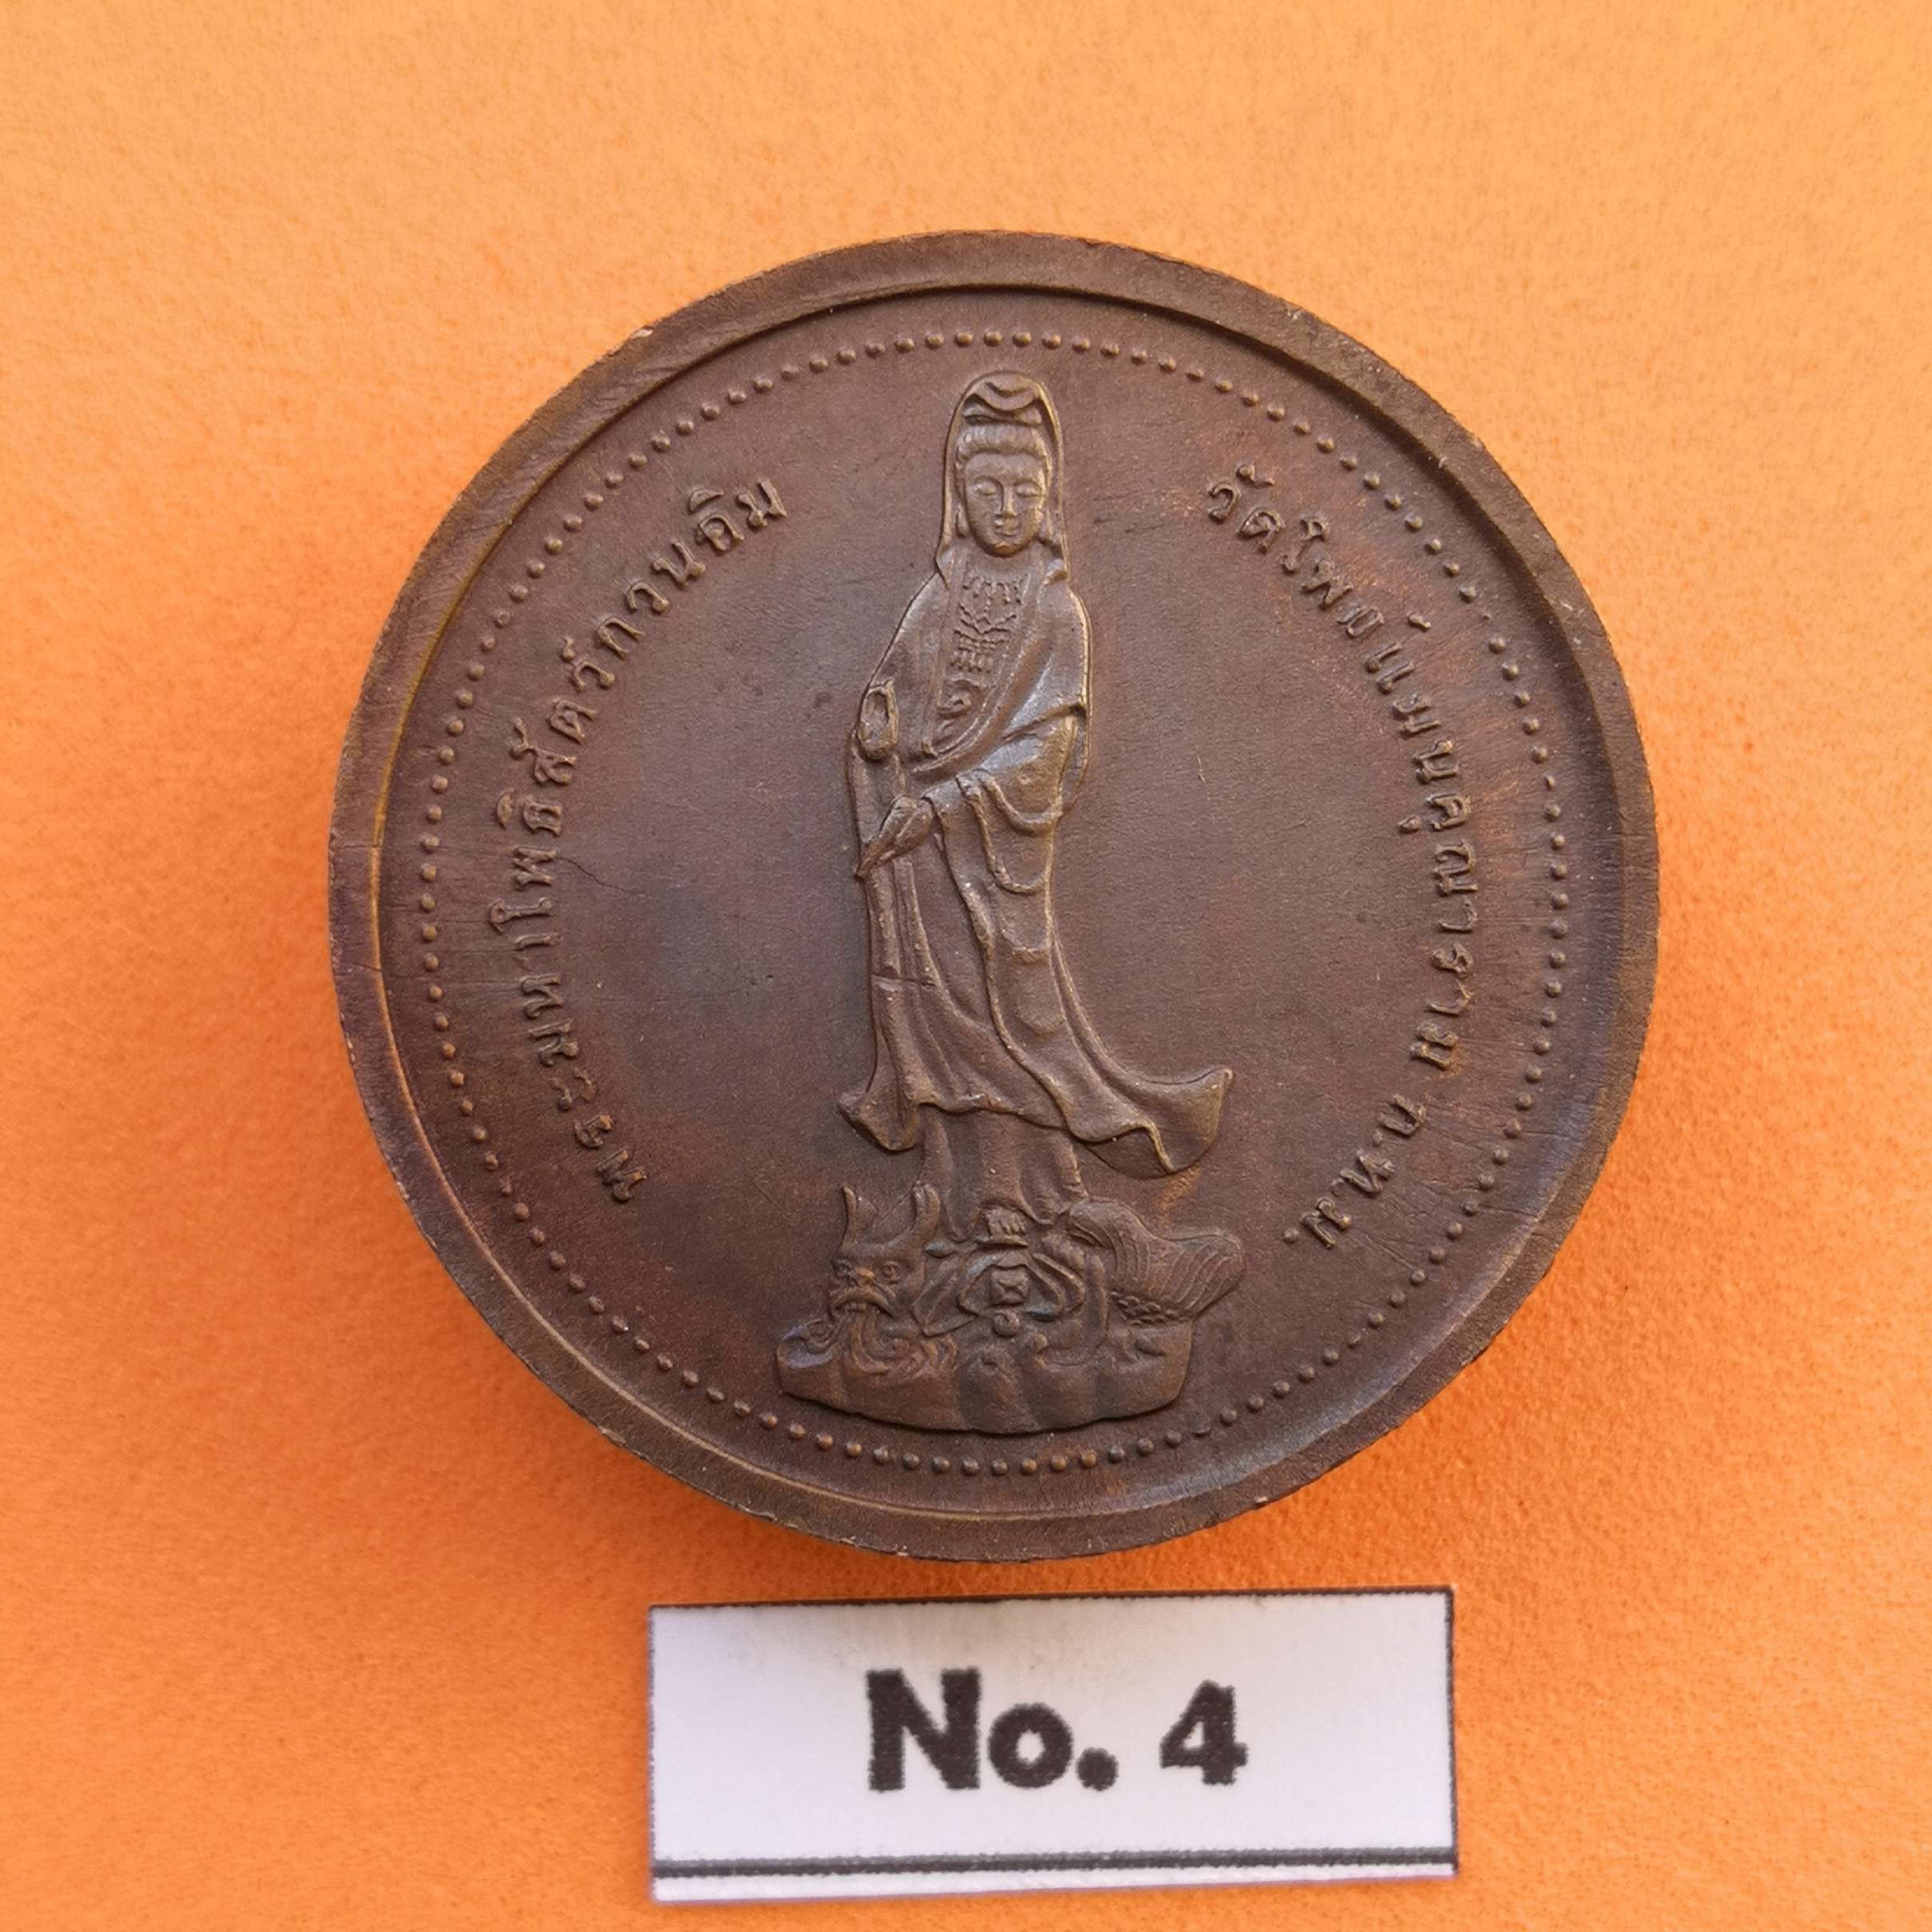 เหรียญพระมหาโพธิสัตว์กวนอิม - พระศรีอาริยะเมตตรัยโพธิสัตว์ วัดโพธิแมนคุณาราม พศ 2539 เนื้อทองแดง ขนาด 2.9 เซน (99Thaicoin เจ้าแม่กวนอิม ของสะสม ของที่ระลึก วัตถุมงคล พระเครื่อง พระบูชา ของขวัญ)